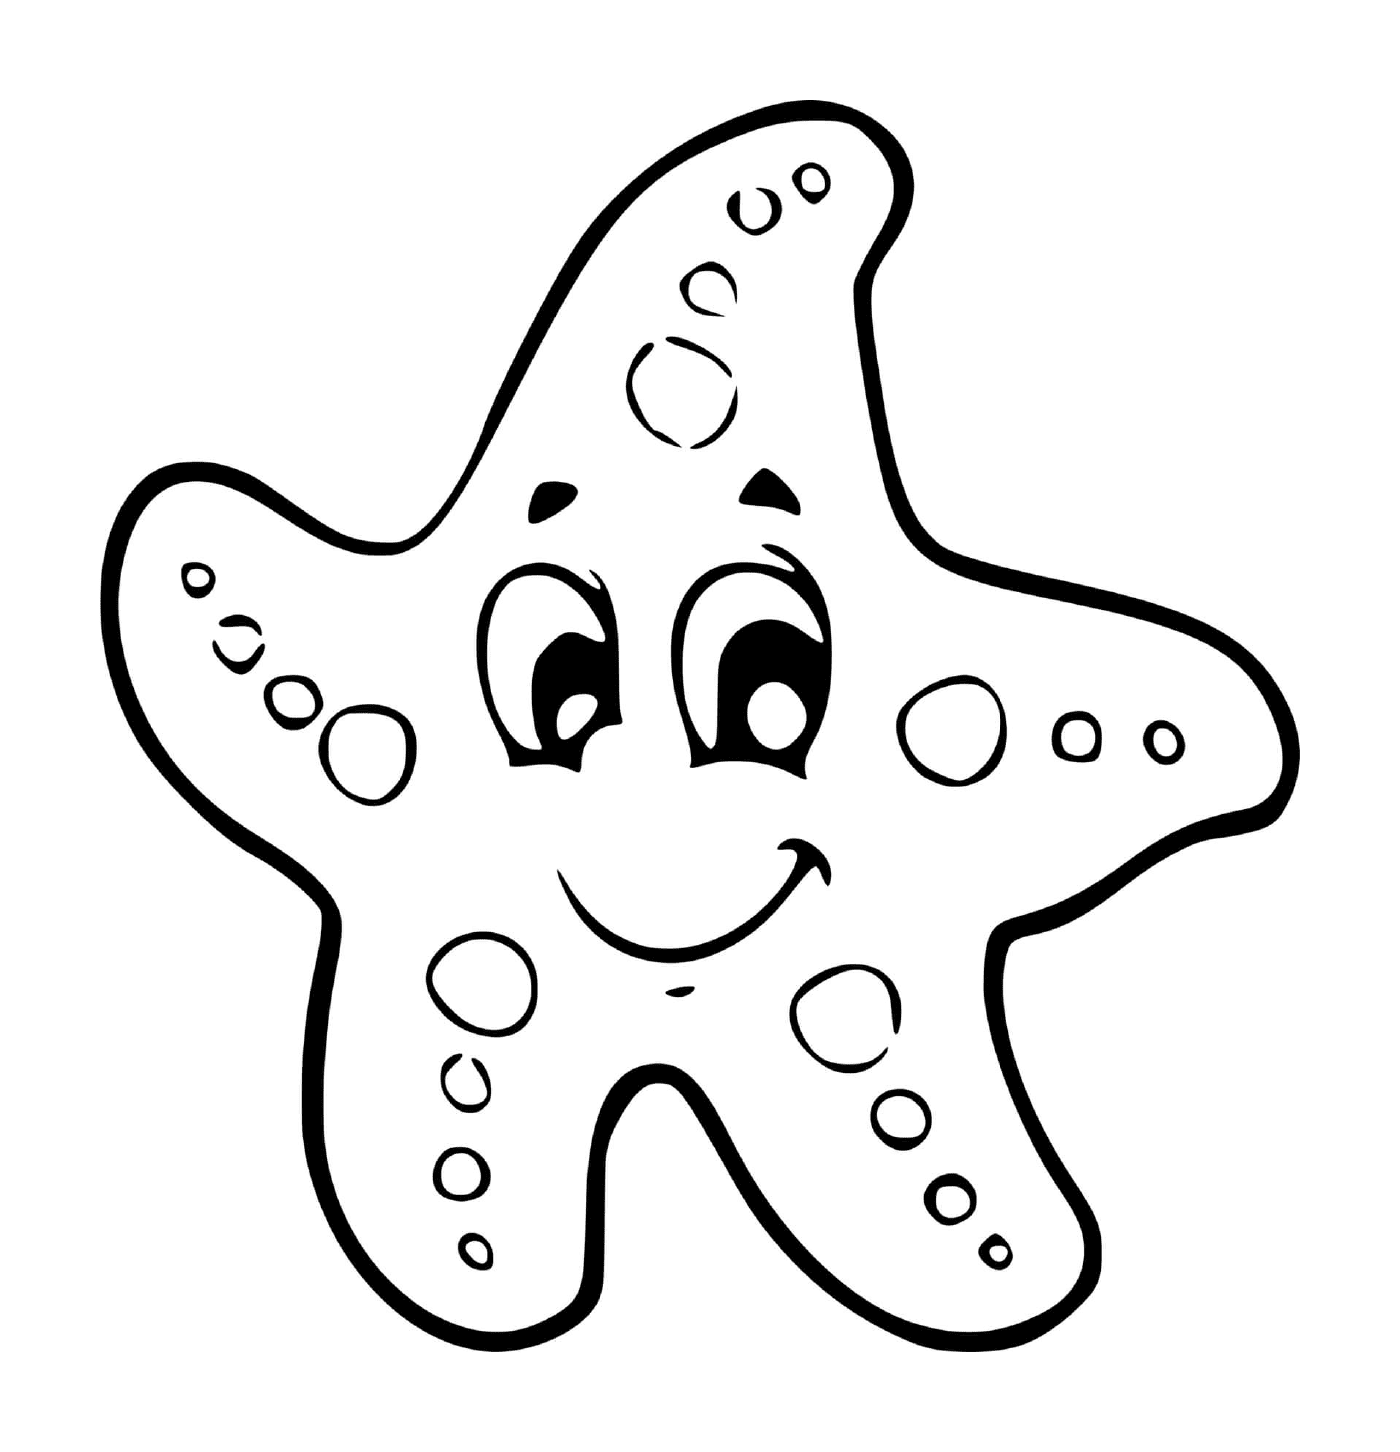  una estrella del mar para los jardines de infancia 